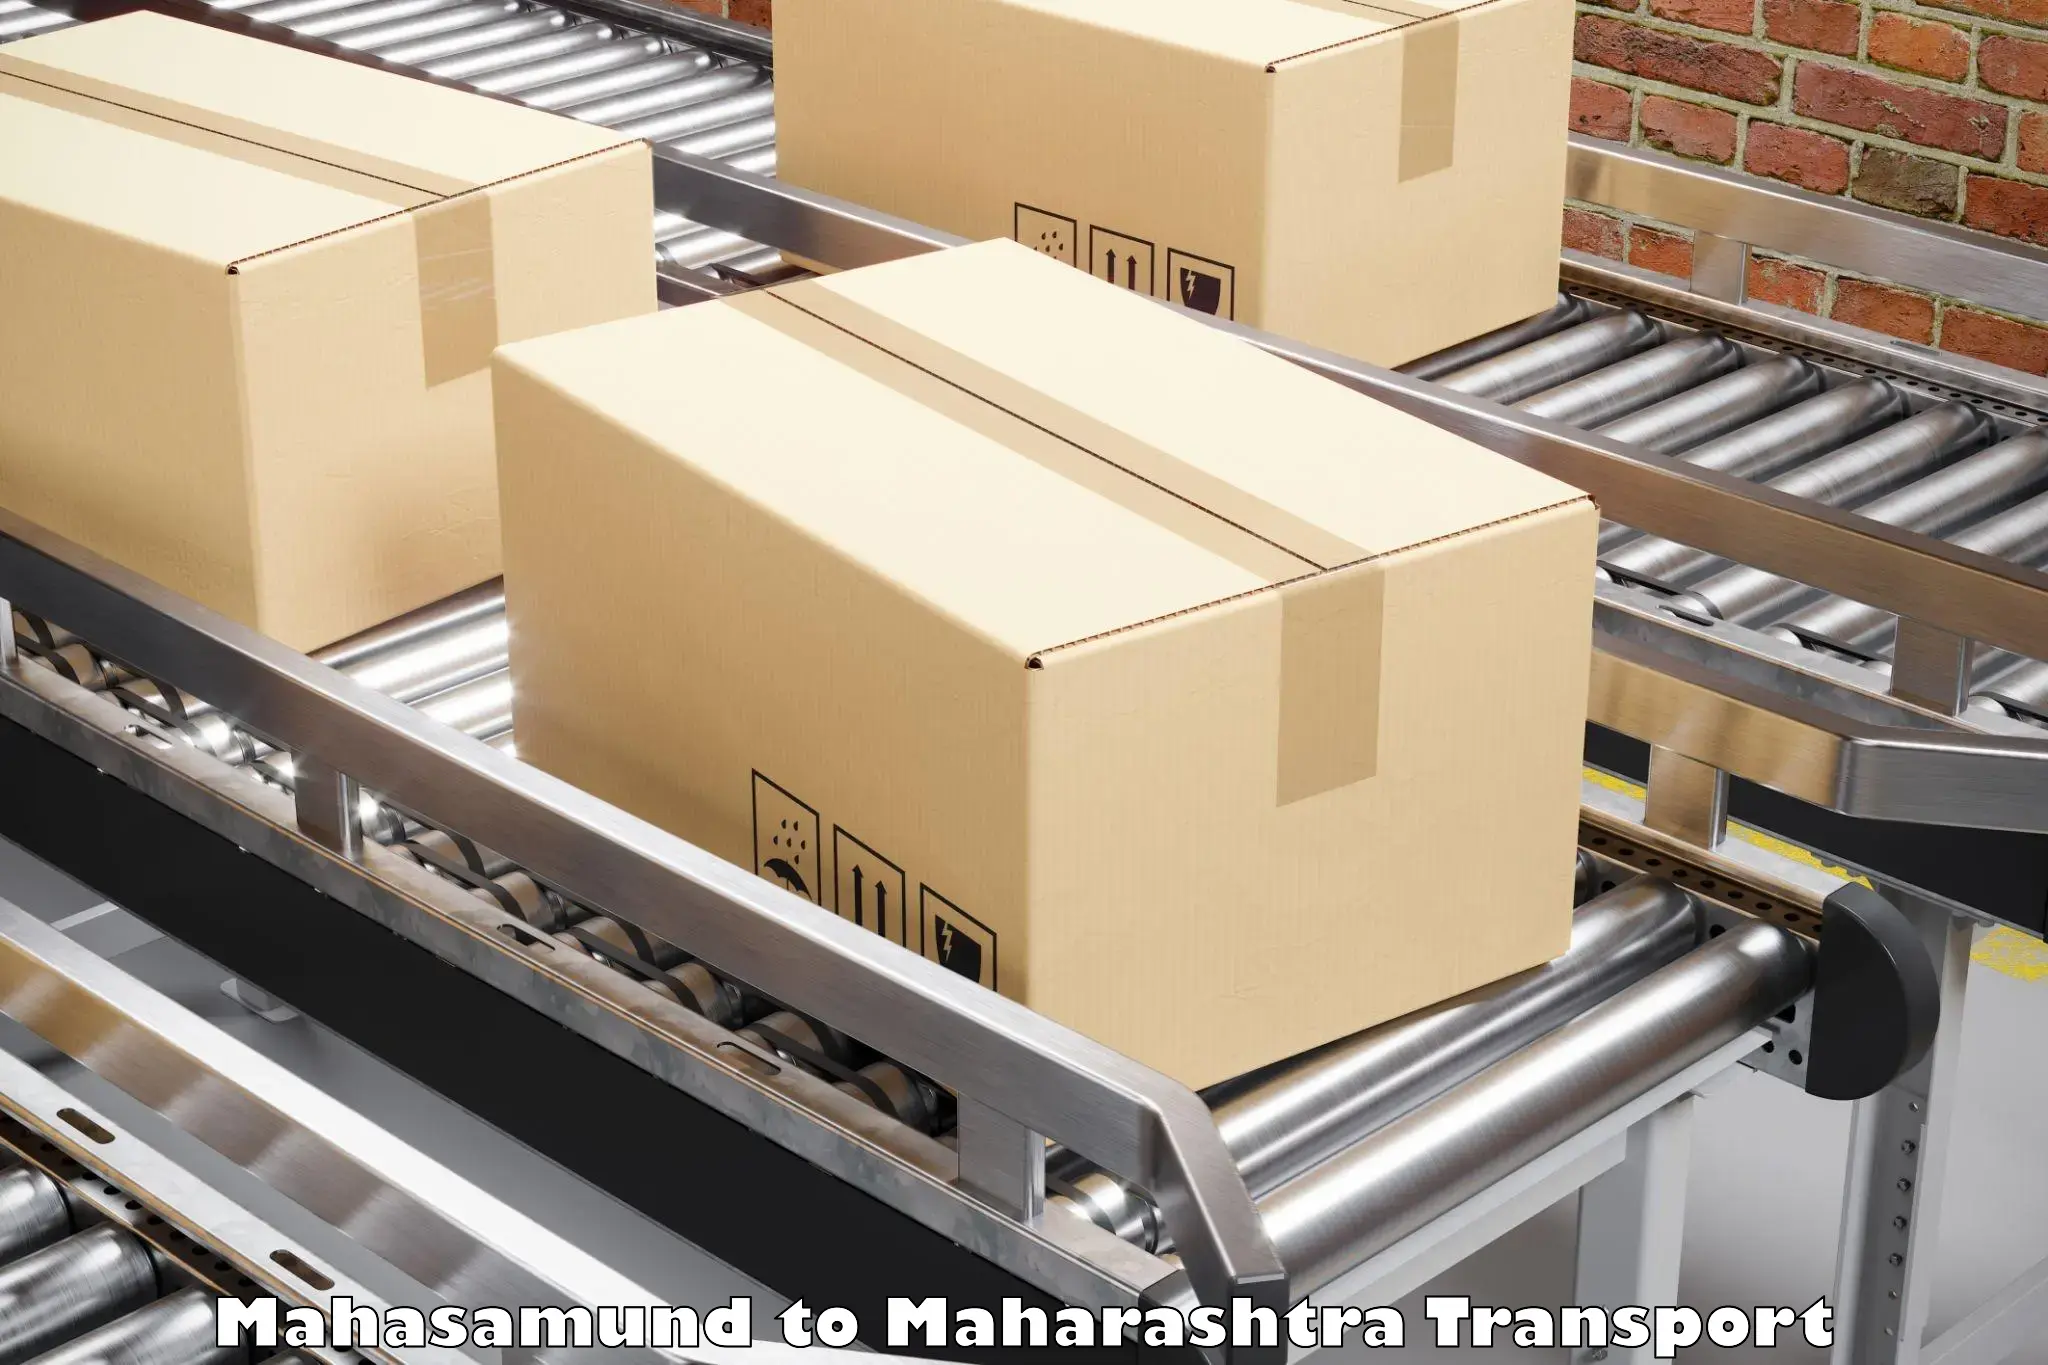 Furniture transport service Mahasamund to Kudus